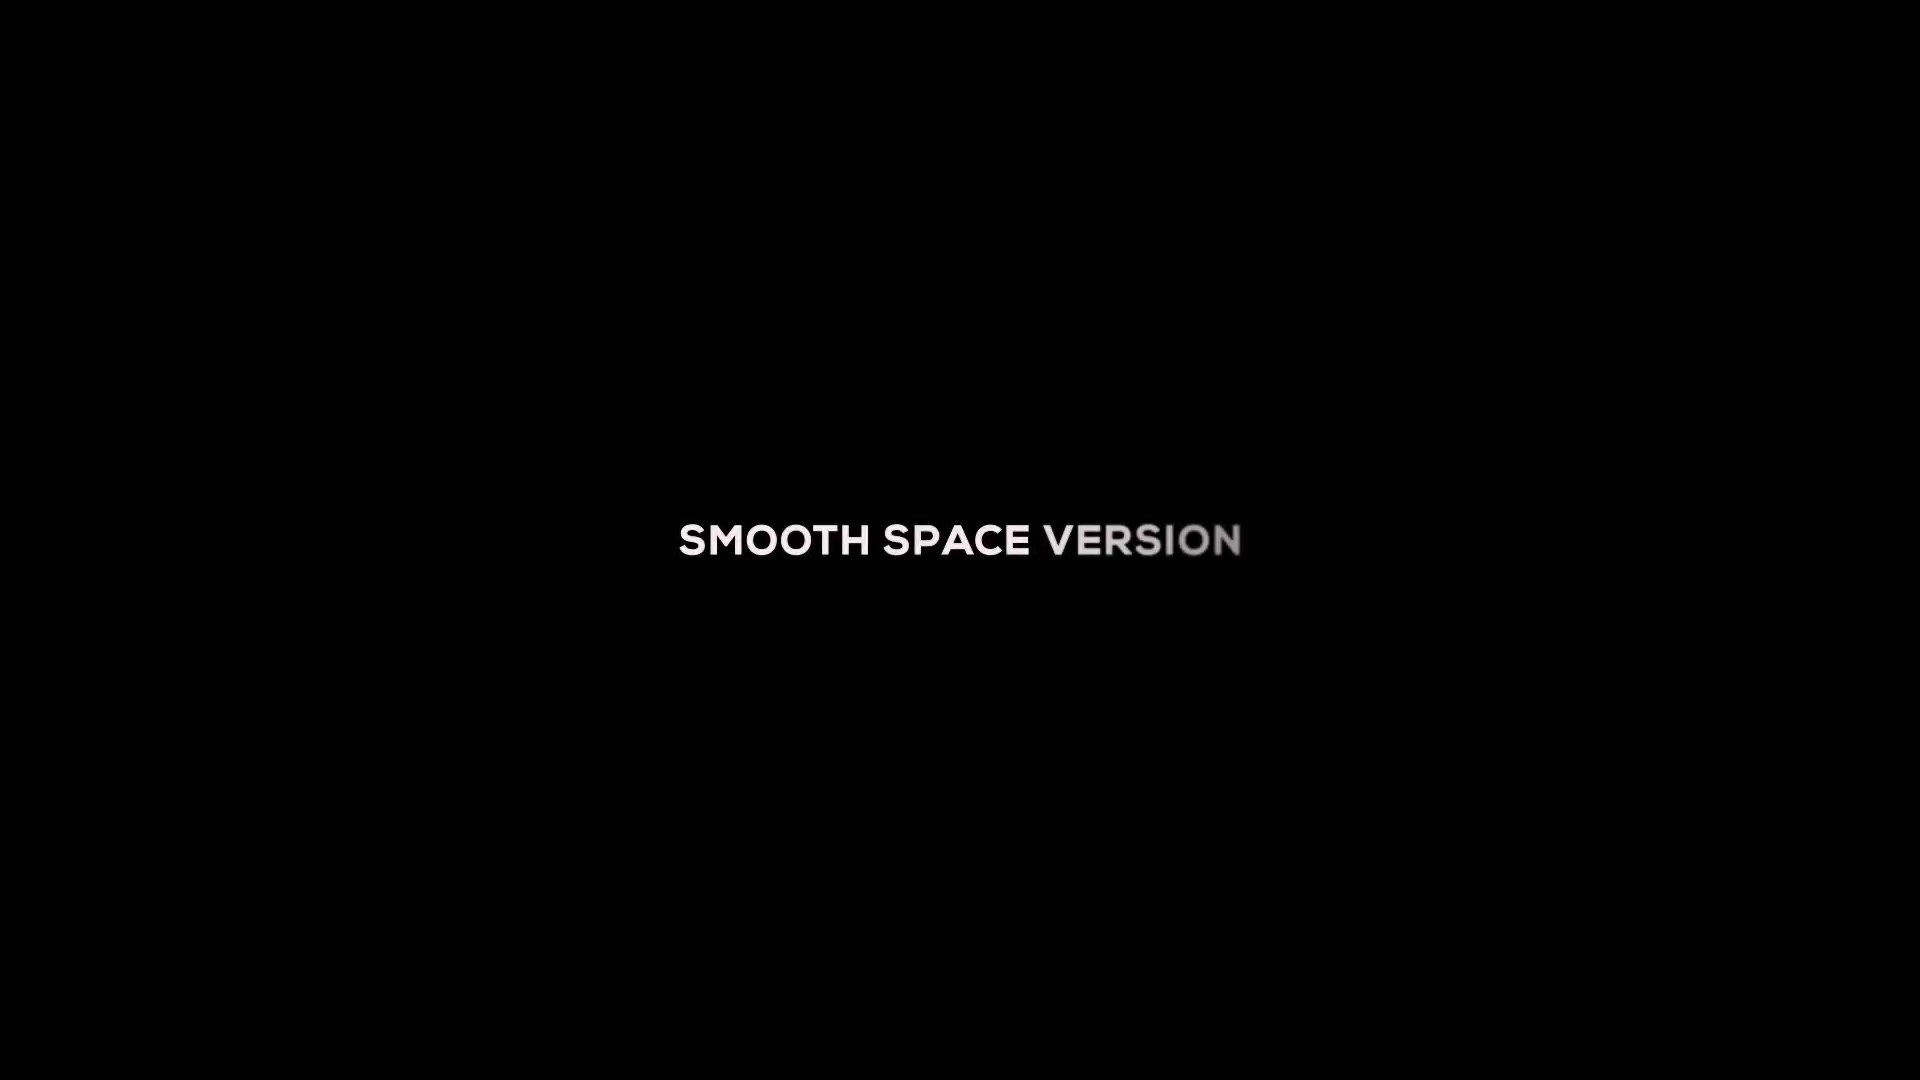 Space Intro Videohive 22487726 Premiere Pro Image 7